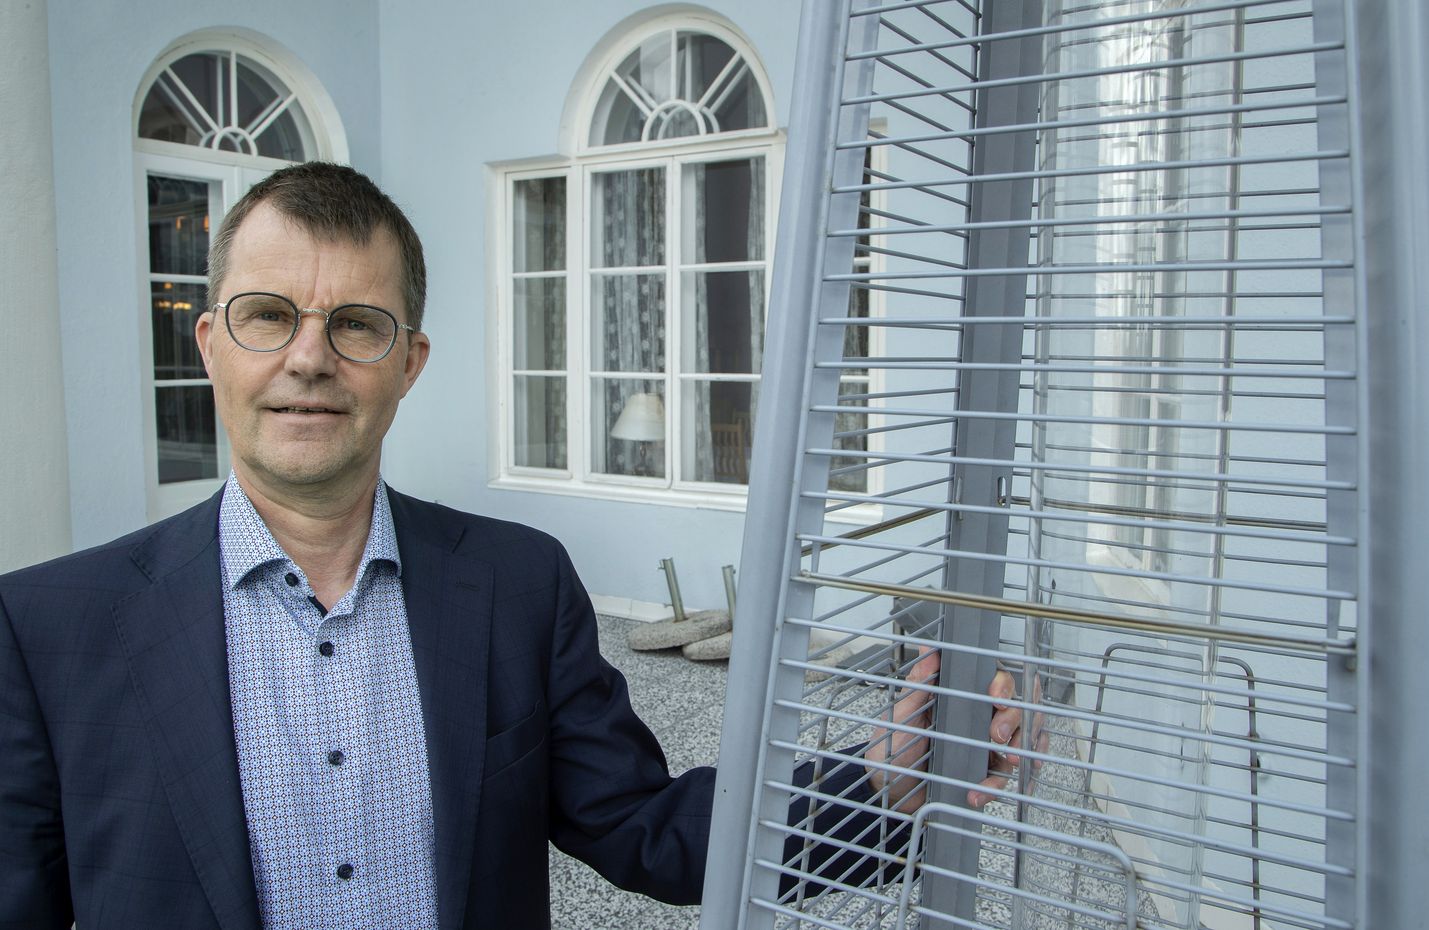 "Tuulivoimakapasiteetti lähestyy 5 000 megawattia alkuvuonna. Ensi vuonna on mahdollista, että Suomi tuottaa yhtä paljon sähköä kuin käyttää", arvioi Fingridin Ruusunen.